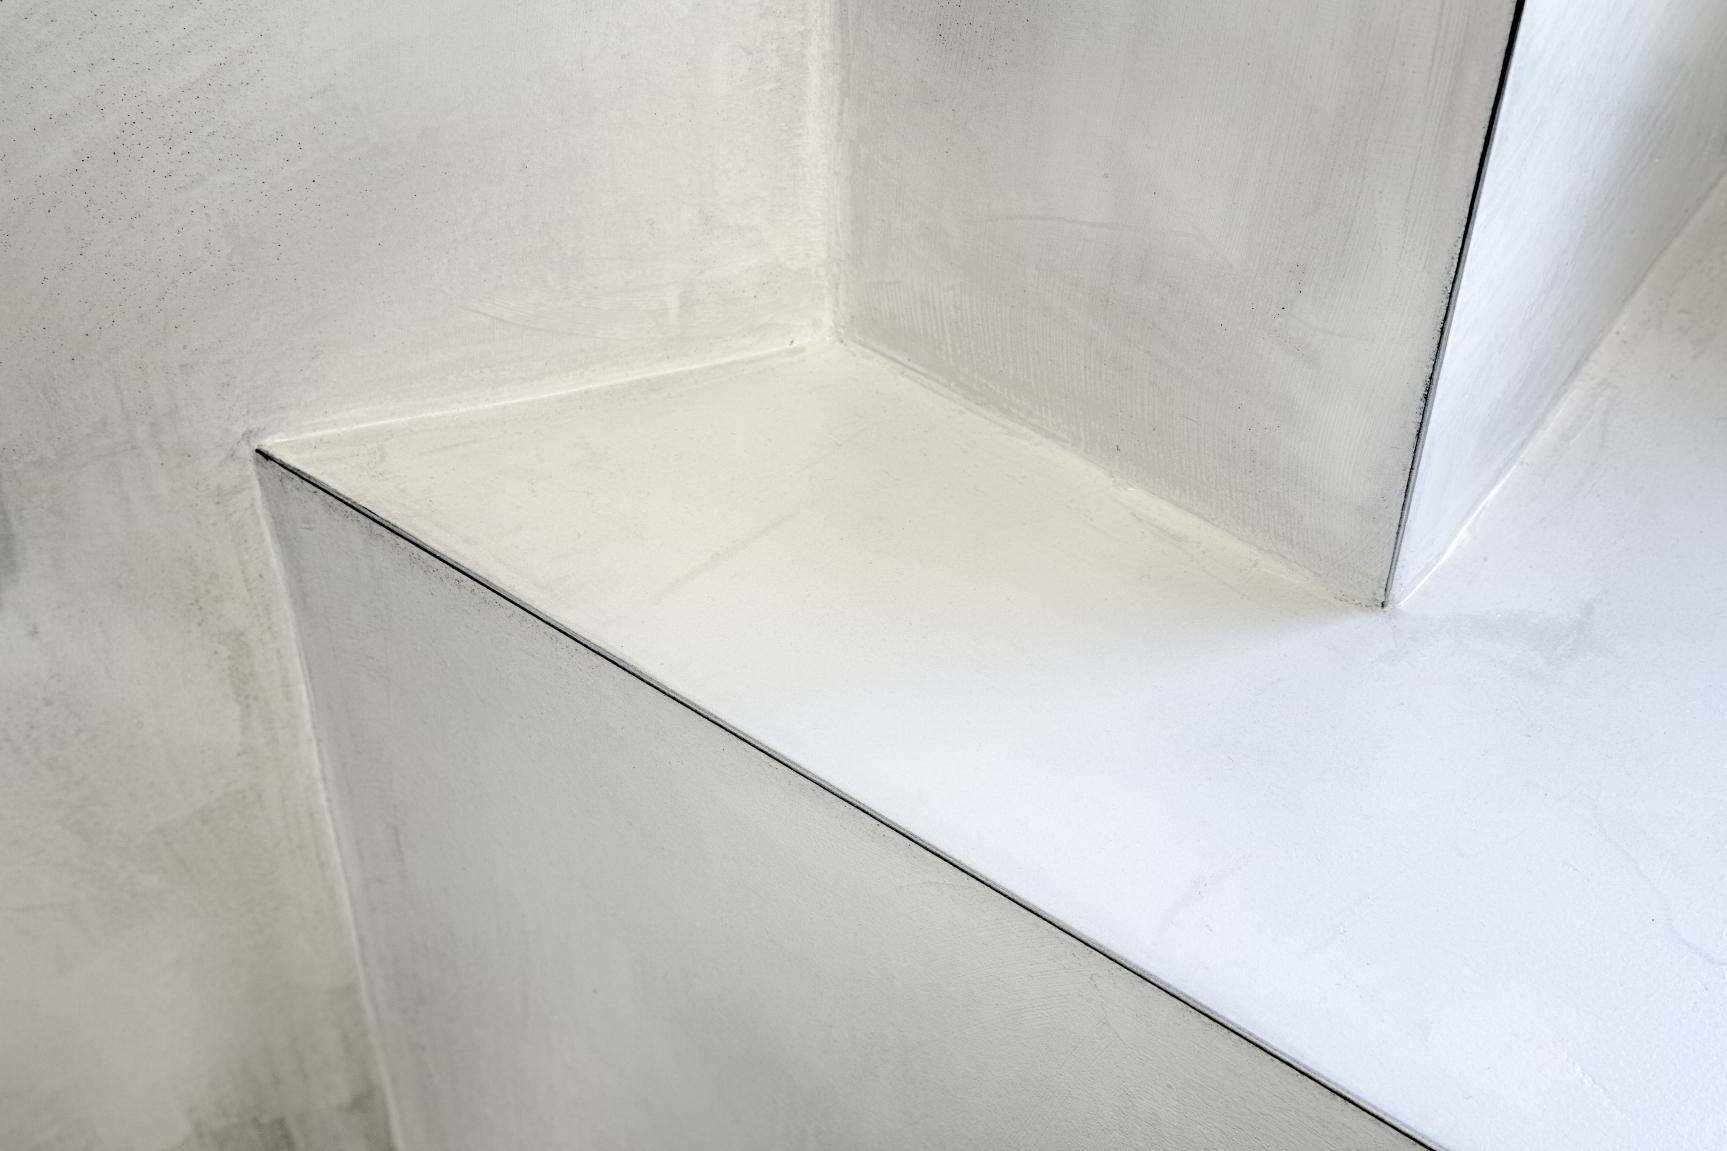 Mikrocement na ścianie i półce w łazience w projekcie Malermeister.